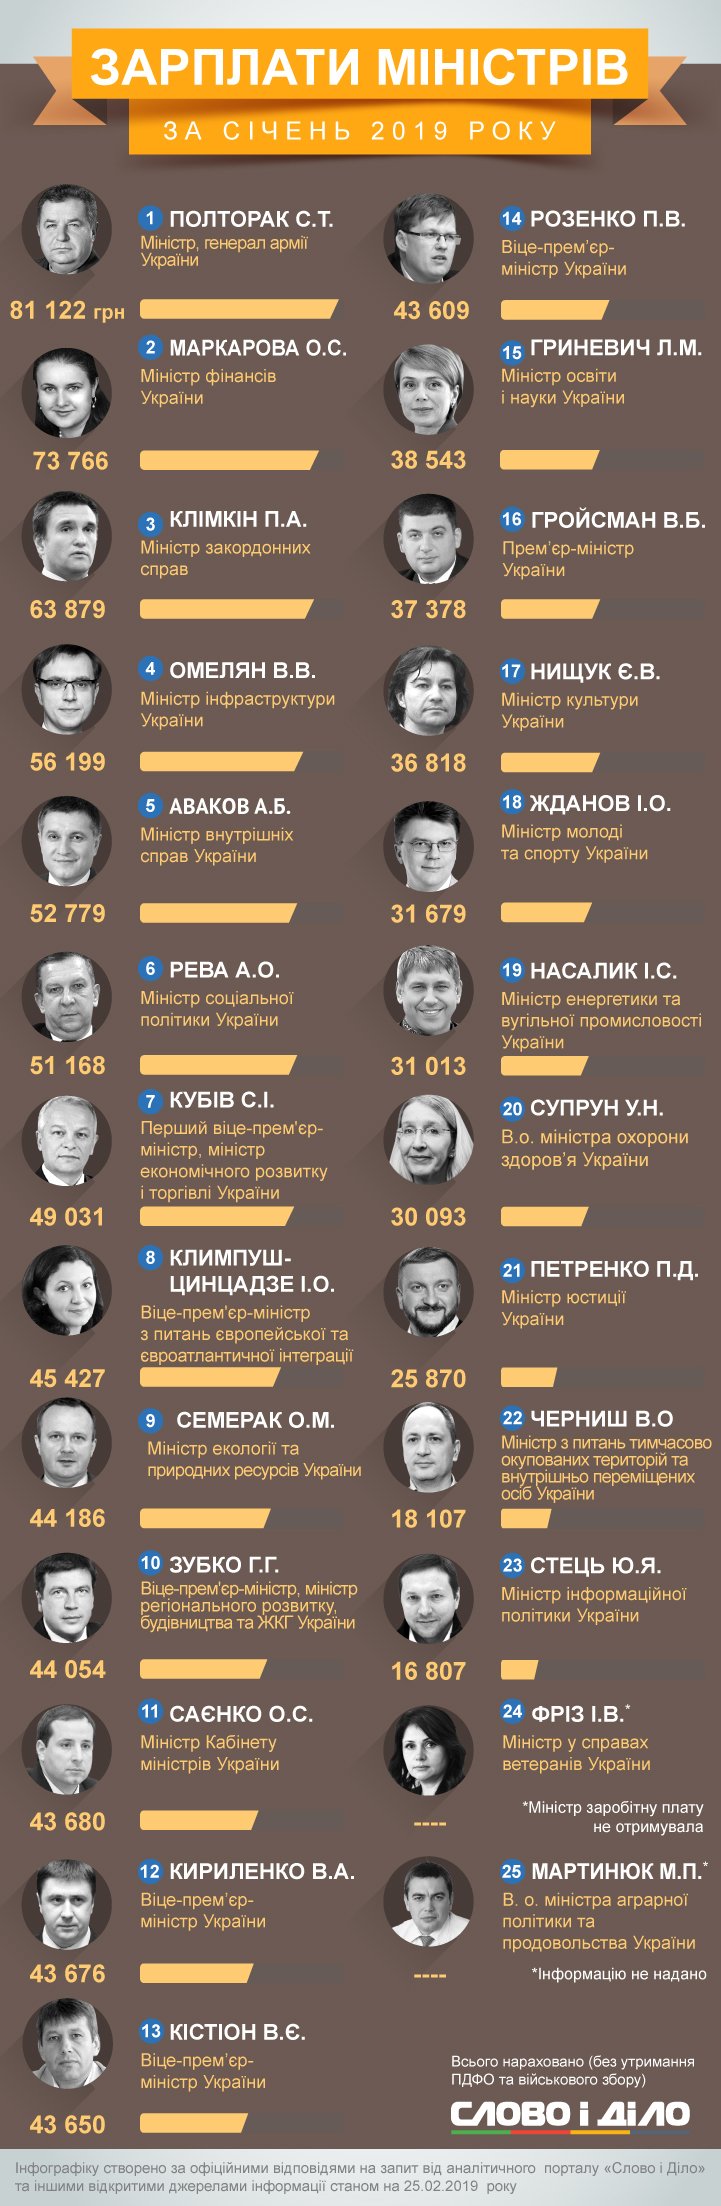 Степан Полторак стал самым высокооплачиваемым министром в январе. Глава Минобороны заработал более 81 тысячи гривен.